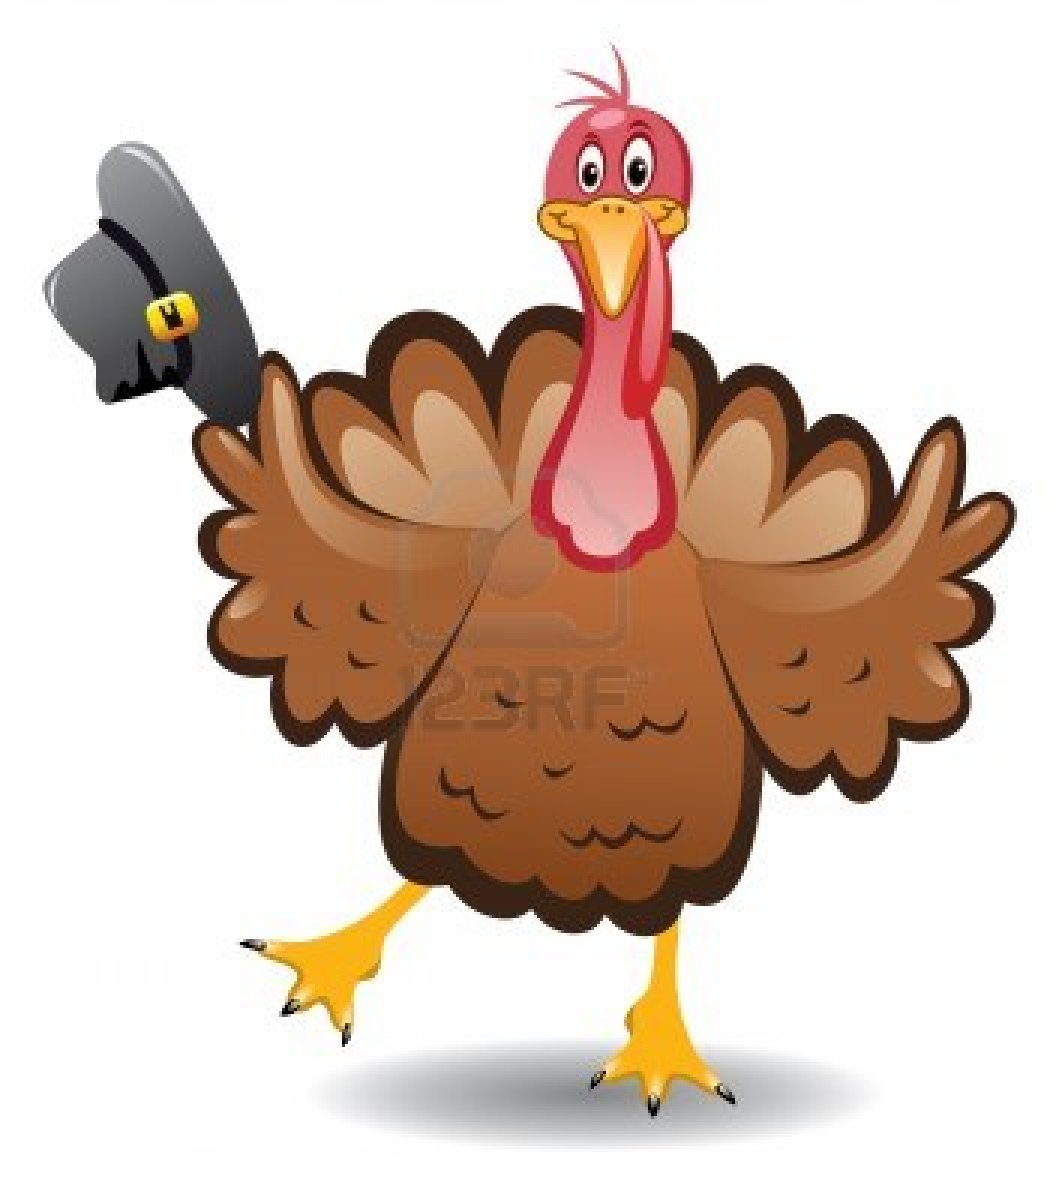 thanksgiving turkey clip art